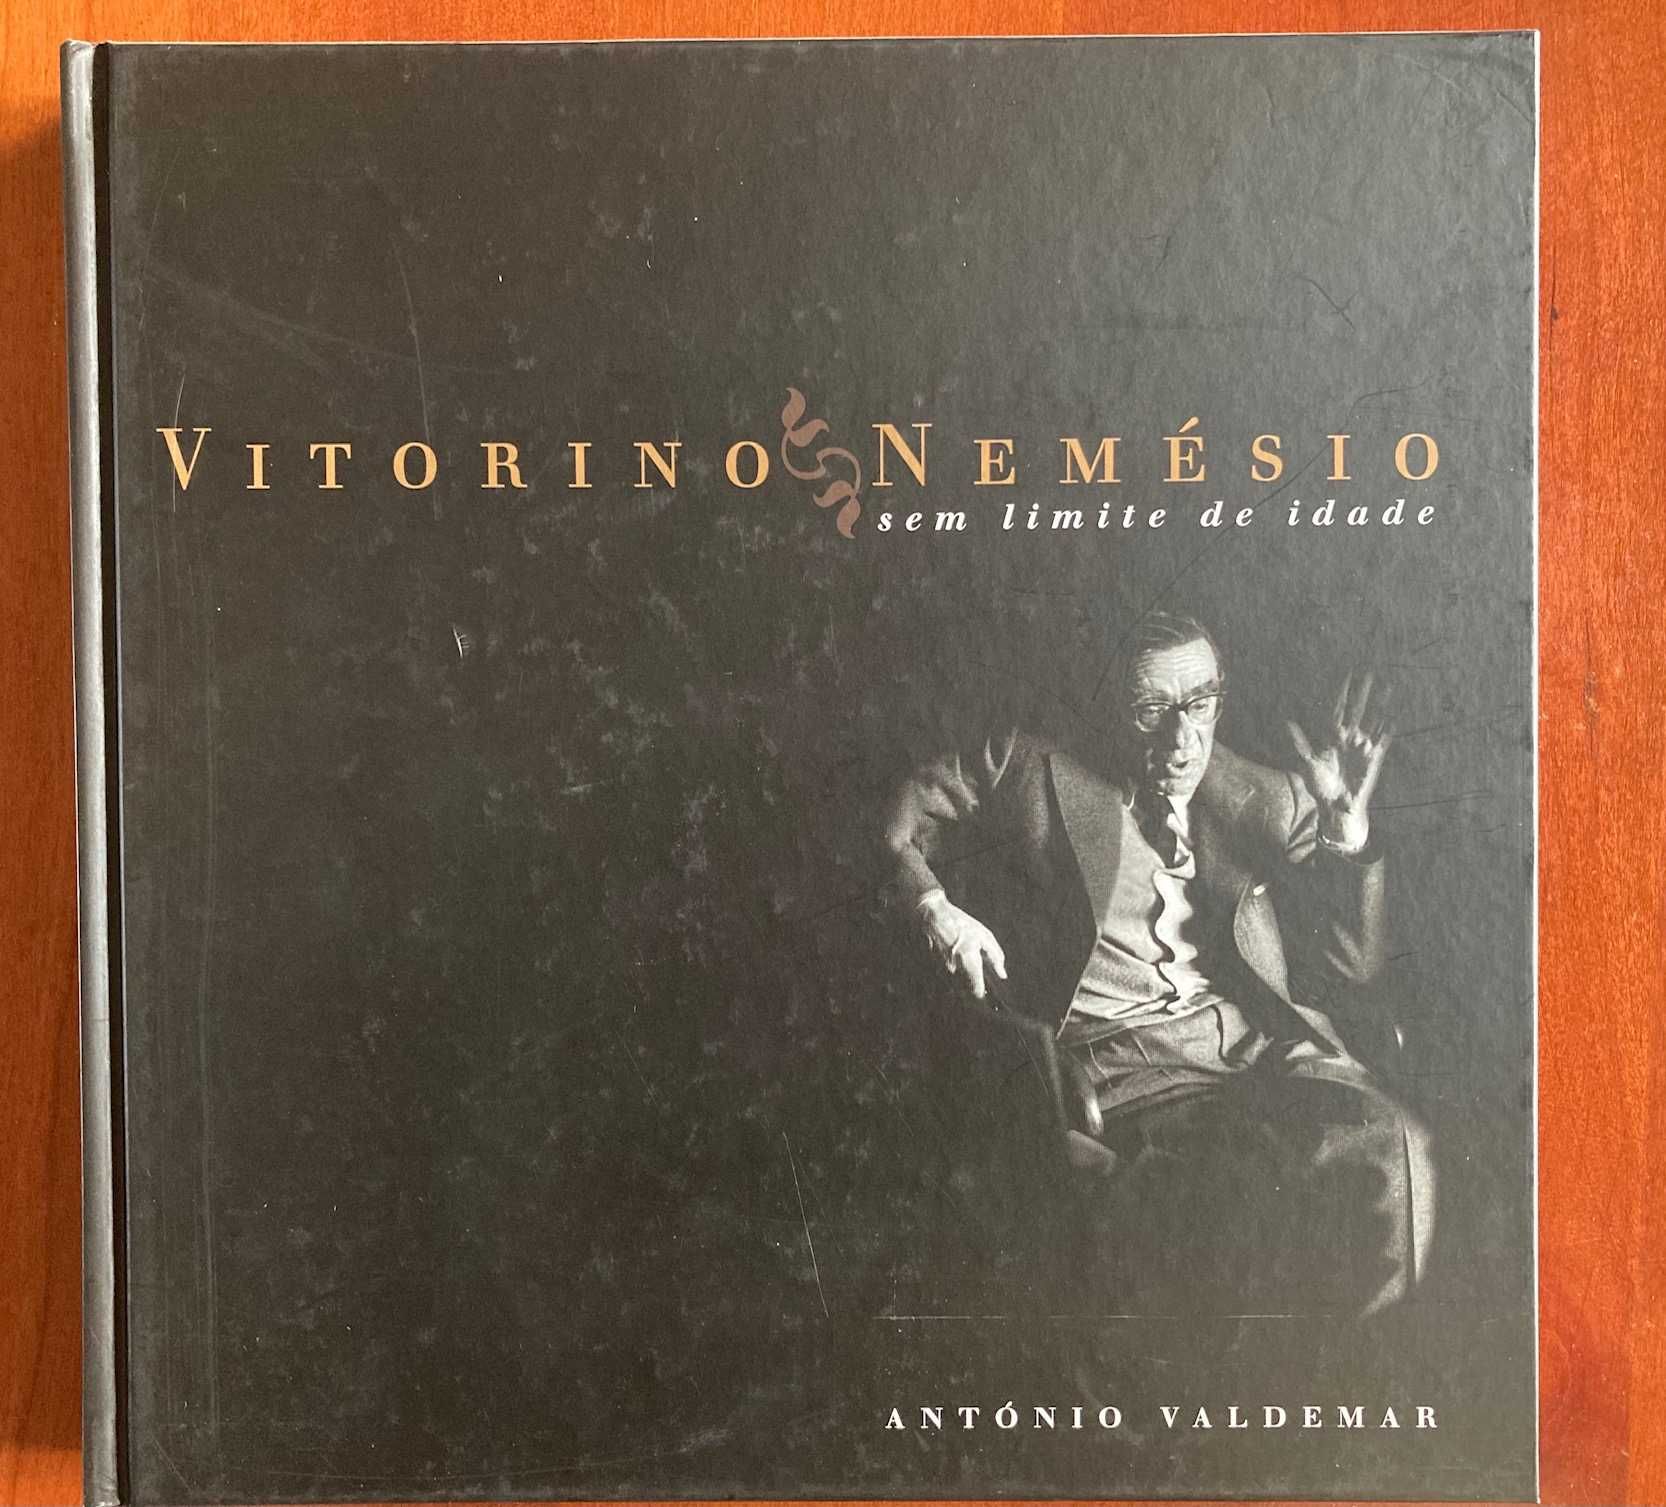 Filatelia-Vitorino Nemésio “Sem limite idade" e Portugal em selos 2006